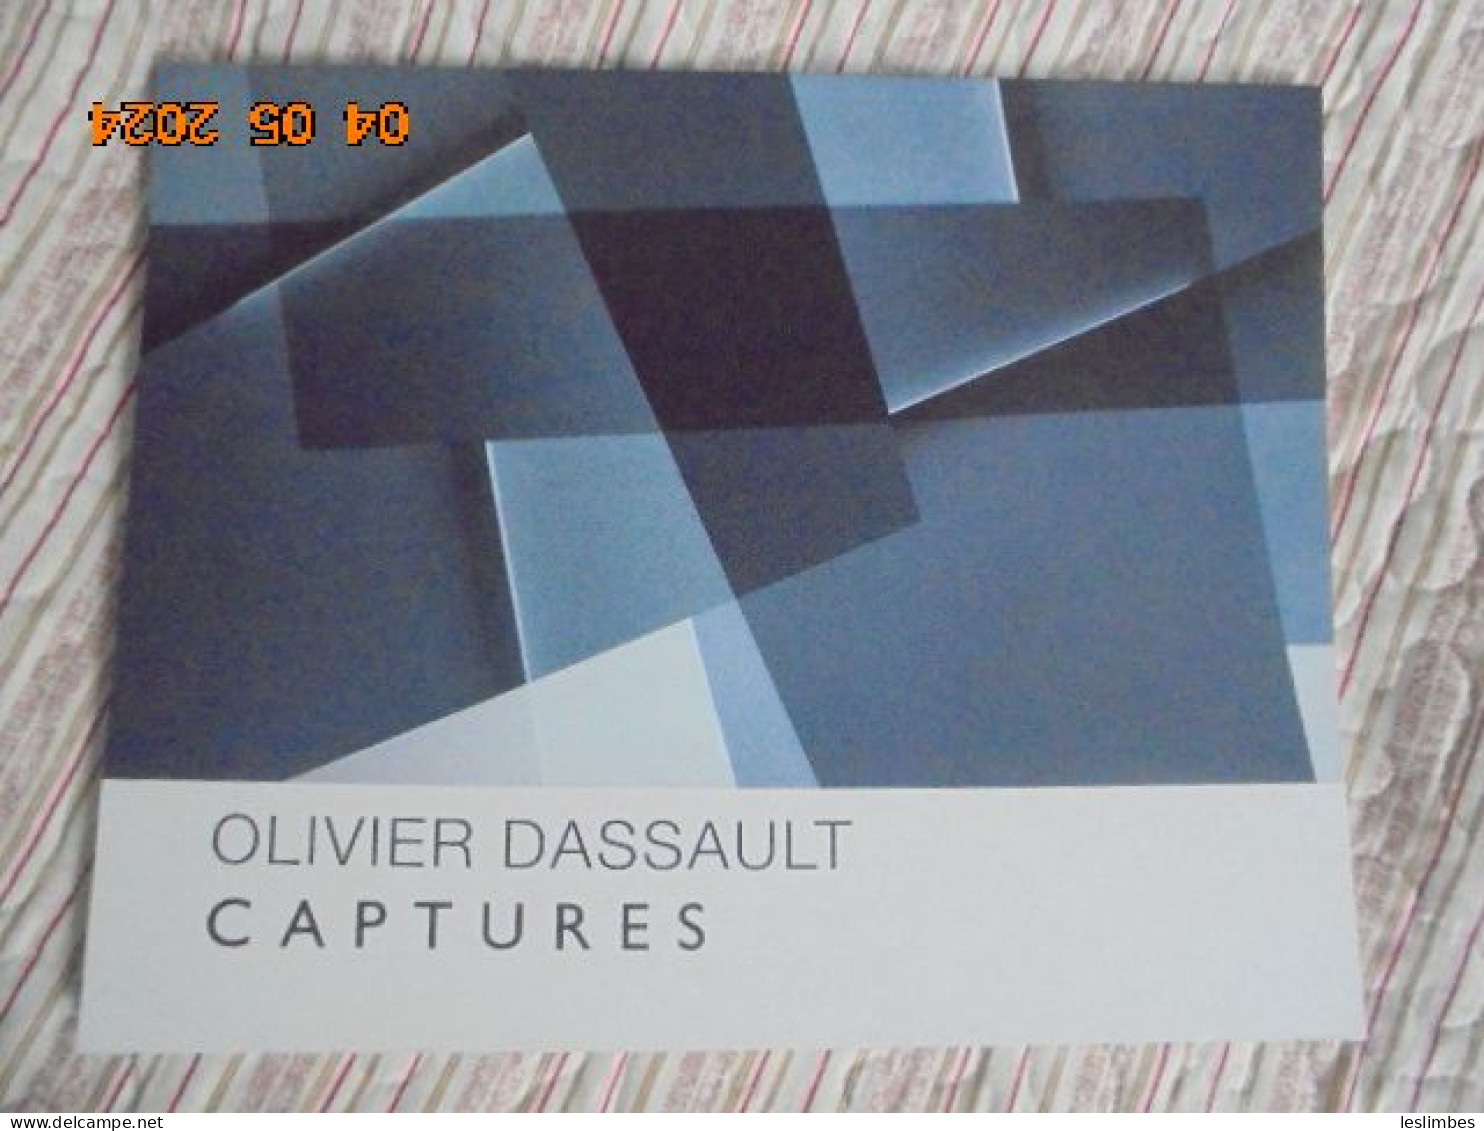 Olivier Dassault : Captures - Guy Pieters Gallery 2014 - Art